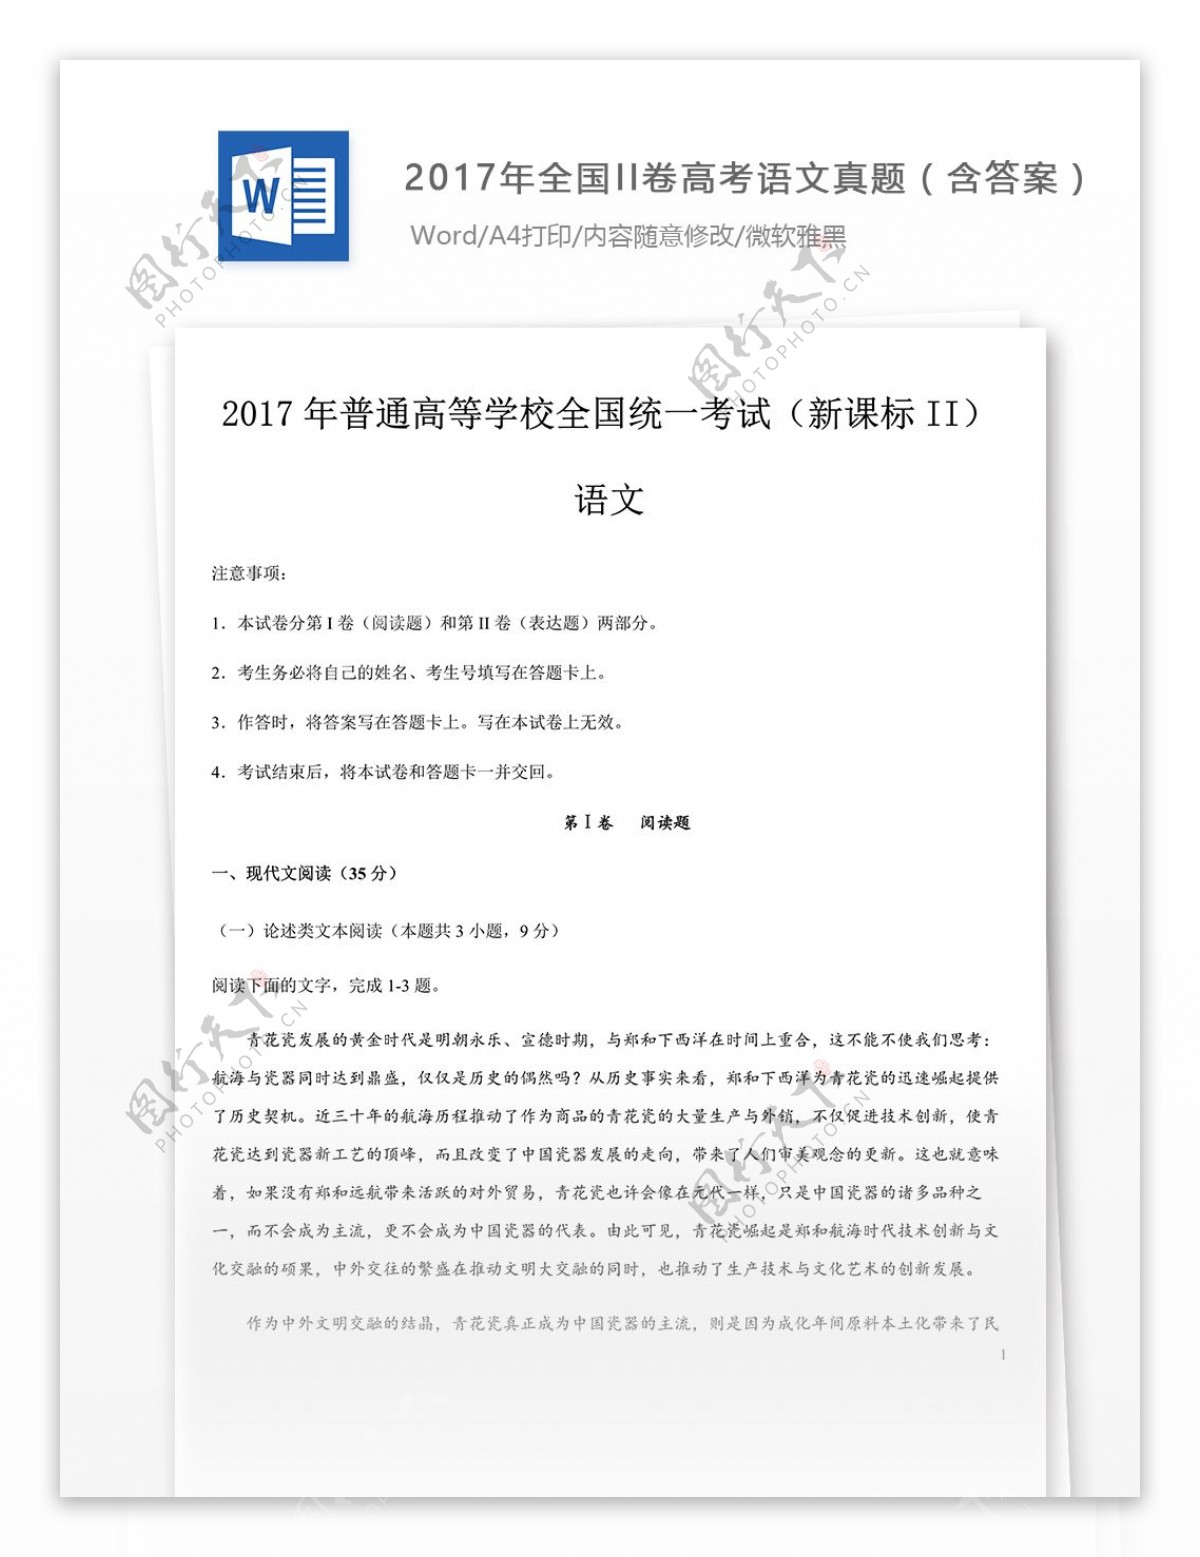 2017年全国II卷高考语文试题下载